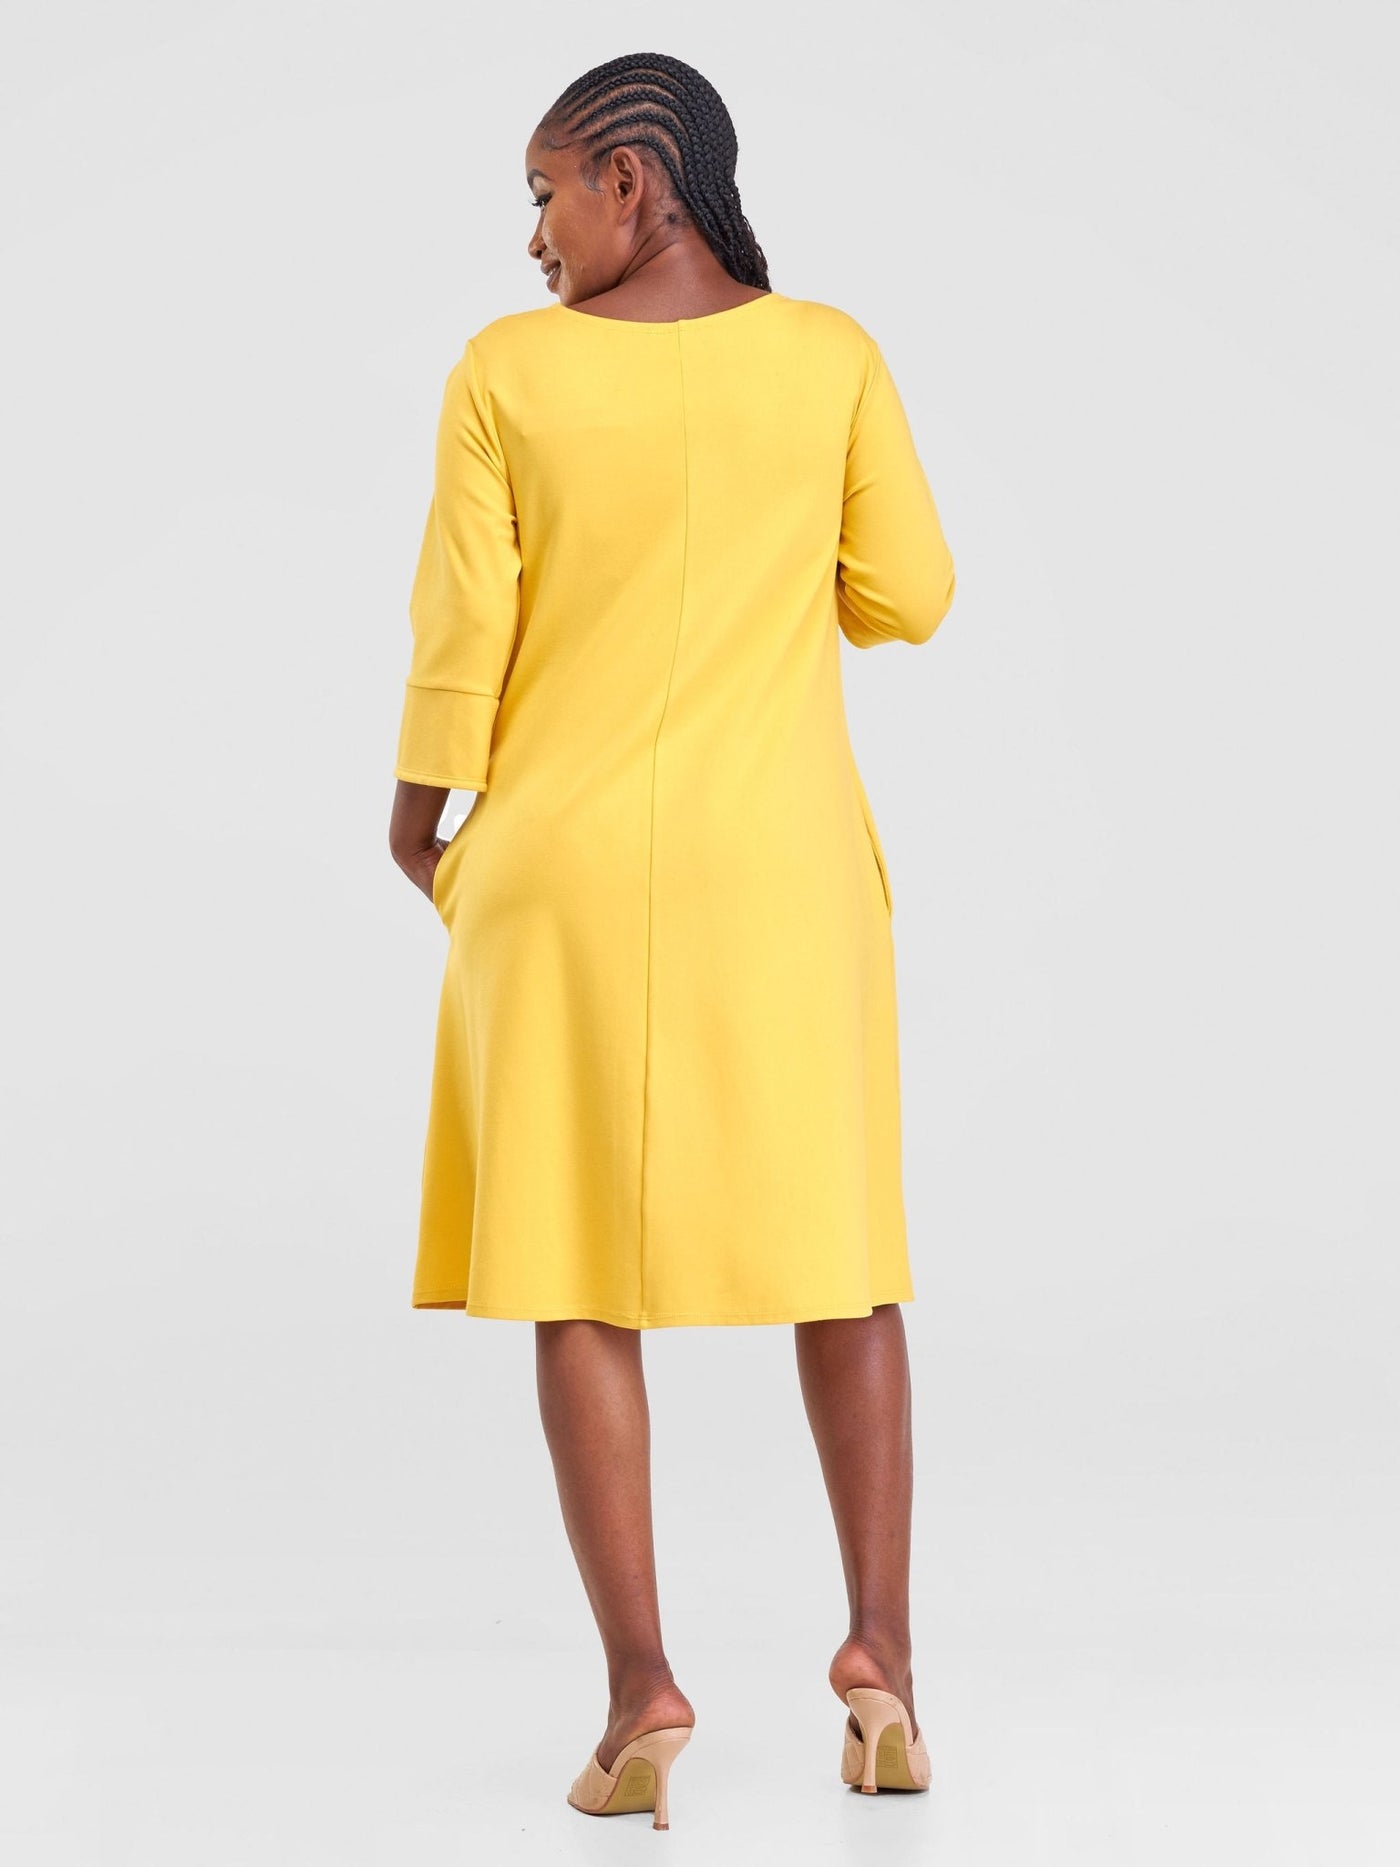 Vivo Zawadi Keyhole Dress - Yellow - Shopzetu